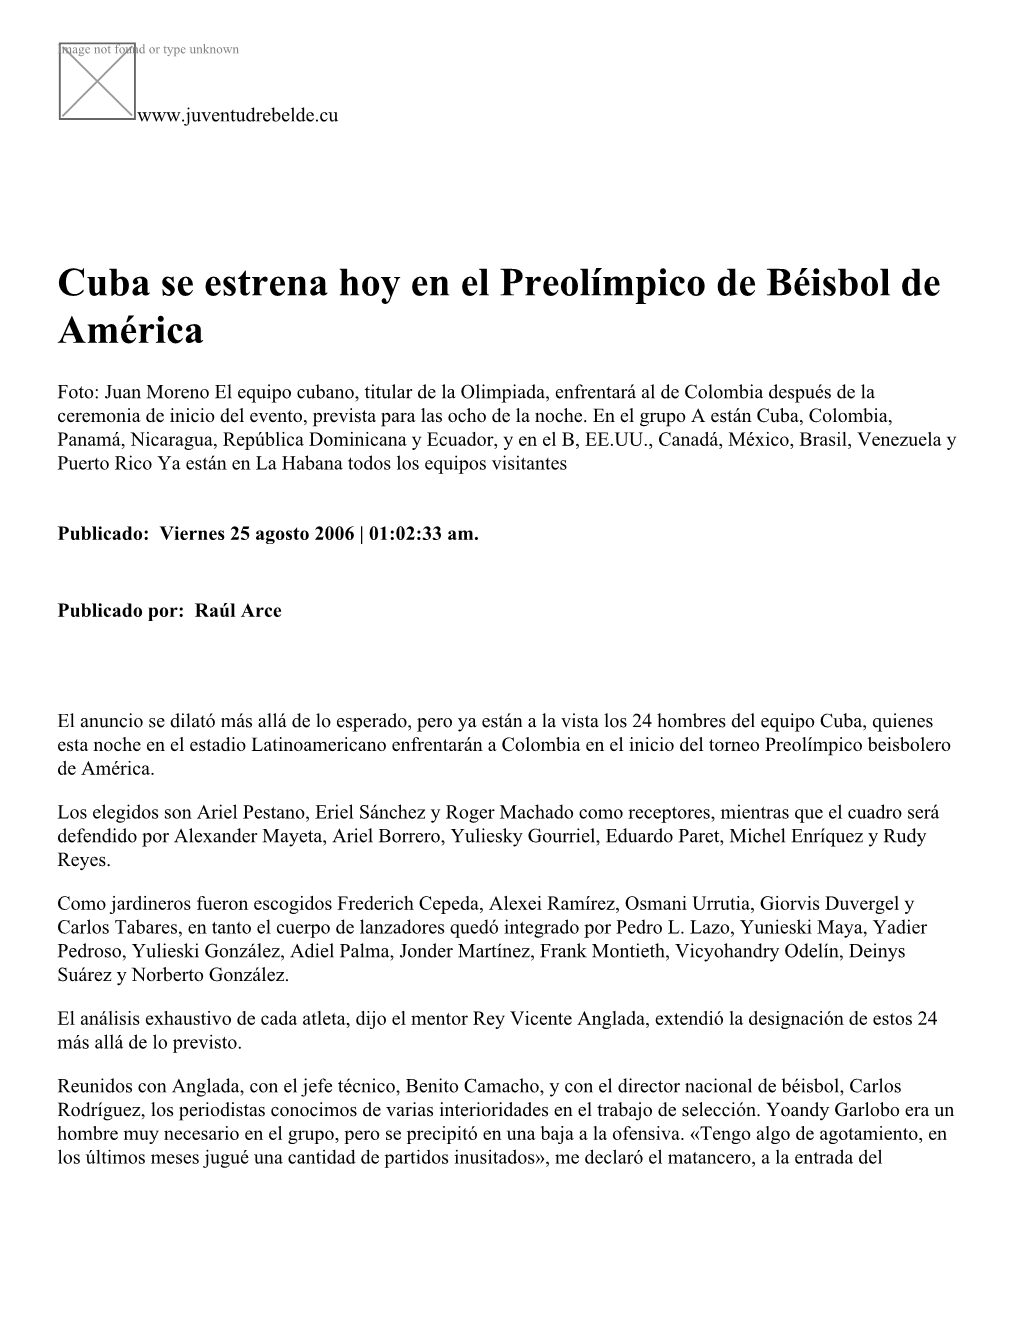 Cuba Se Estrena Hoy En El Preolímpico De Béisbol De América